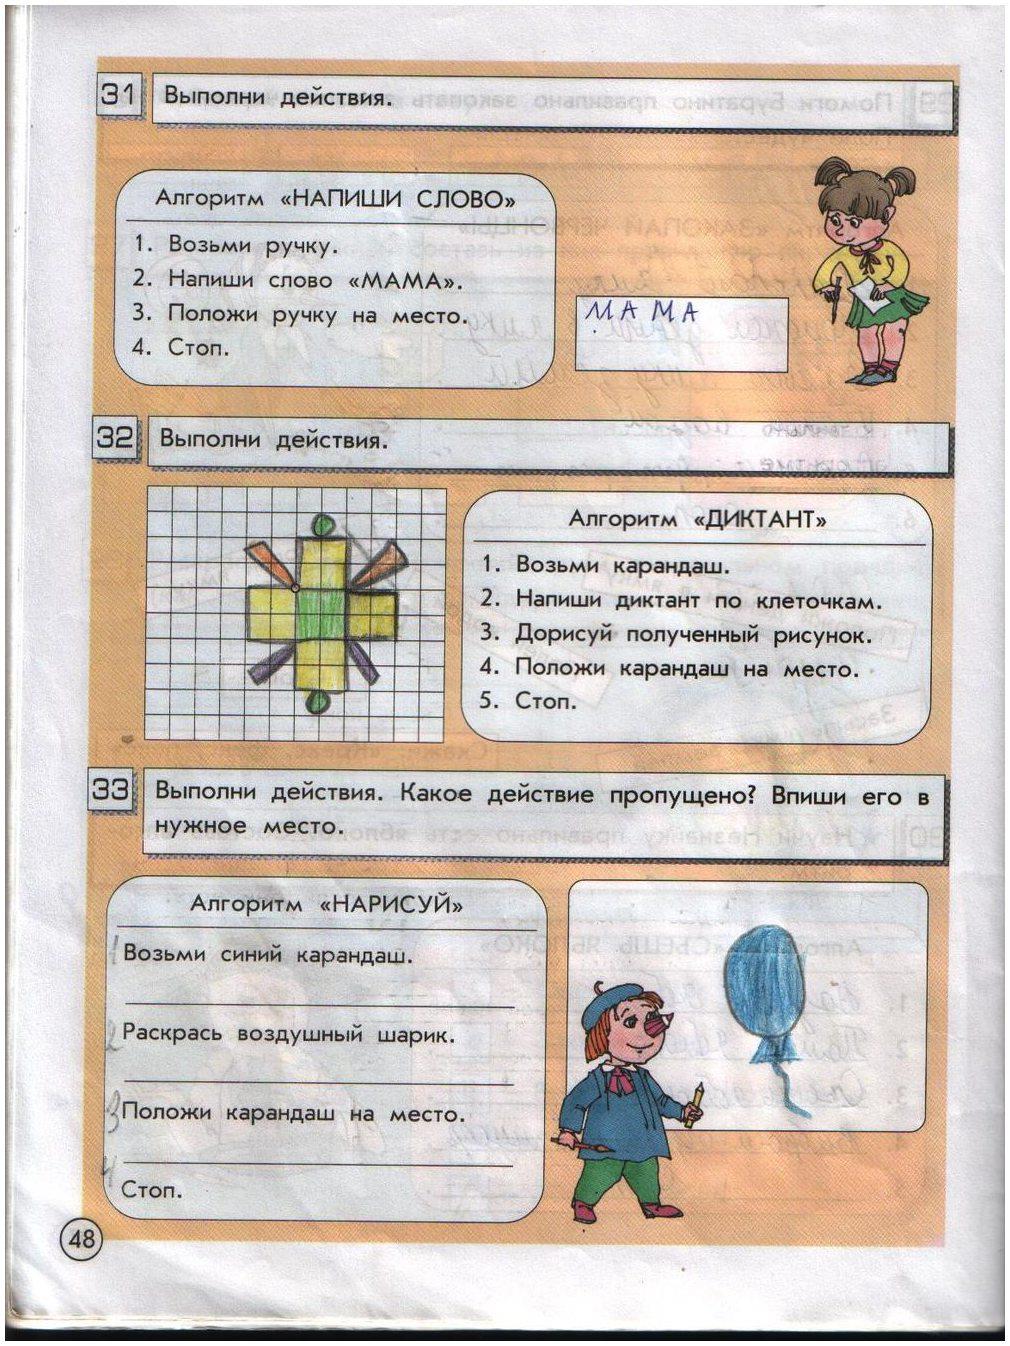 ГДЗ Информатика 2 класс часть 1 страница 48 Горячев, Горина